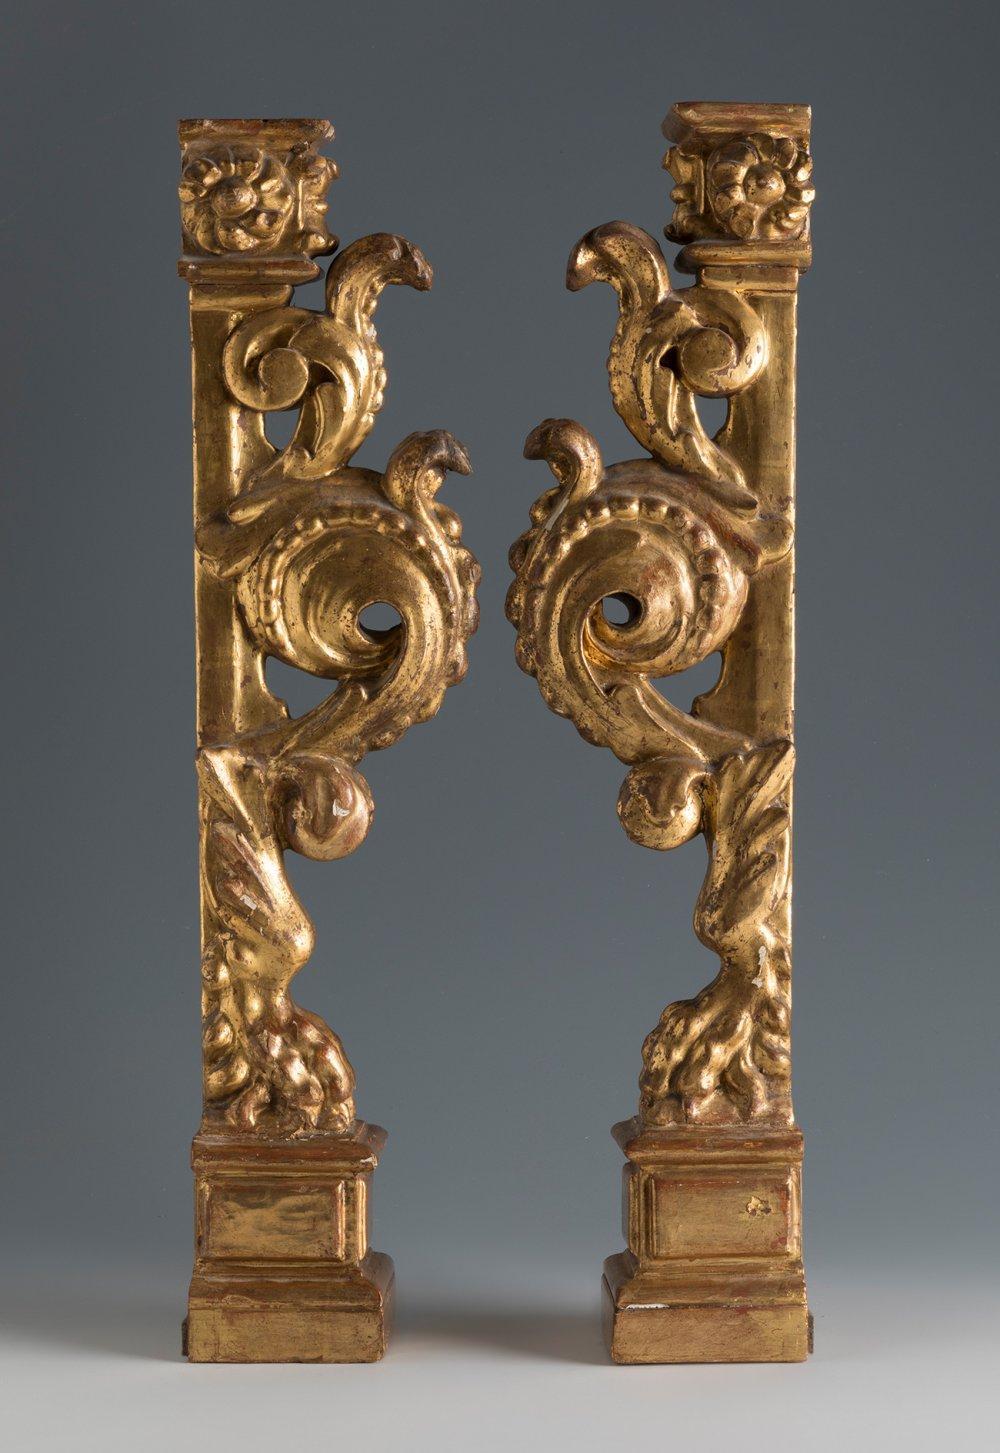 Das vorliegende Paar architektonischer Elemente aus vergoldetem spanischem Barock aus dem späten 17. oder frühen 18. Jahrhundert war möglicherweise einst Teil eines Altaraufsatzes. Ihr dekoratives Programm besteht aus Löwenfüßen, die auf klassisch